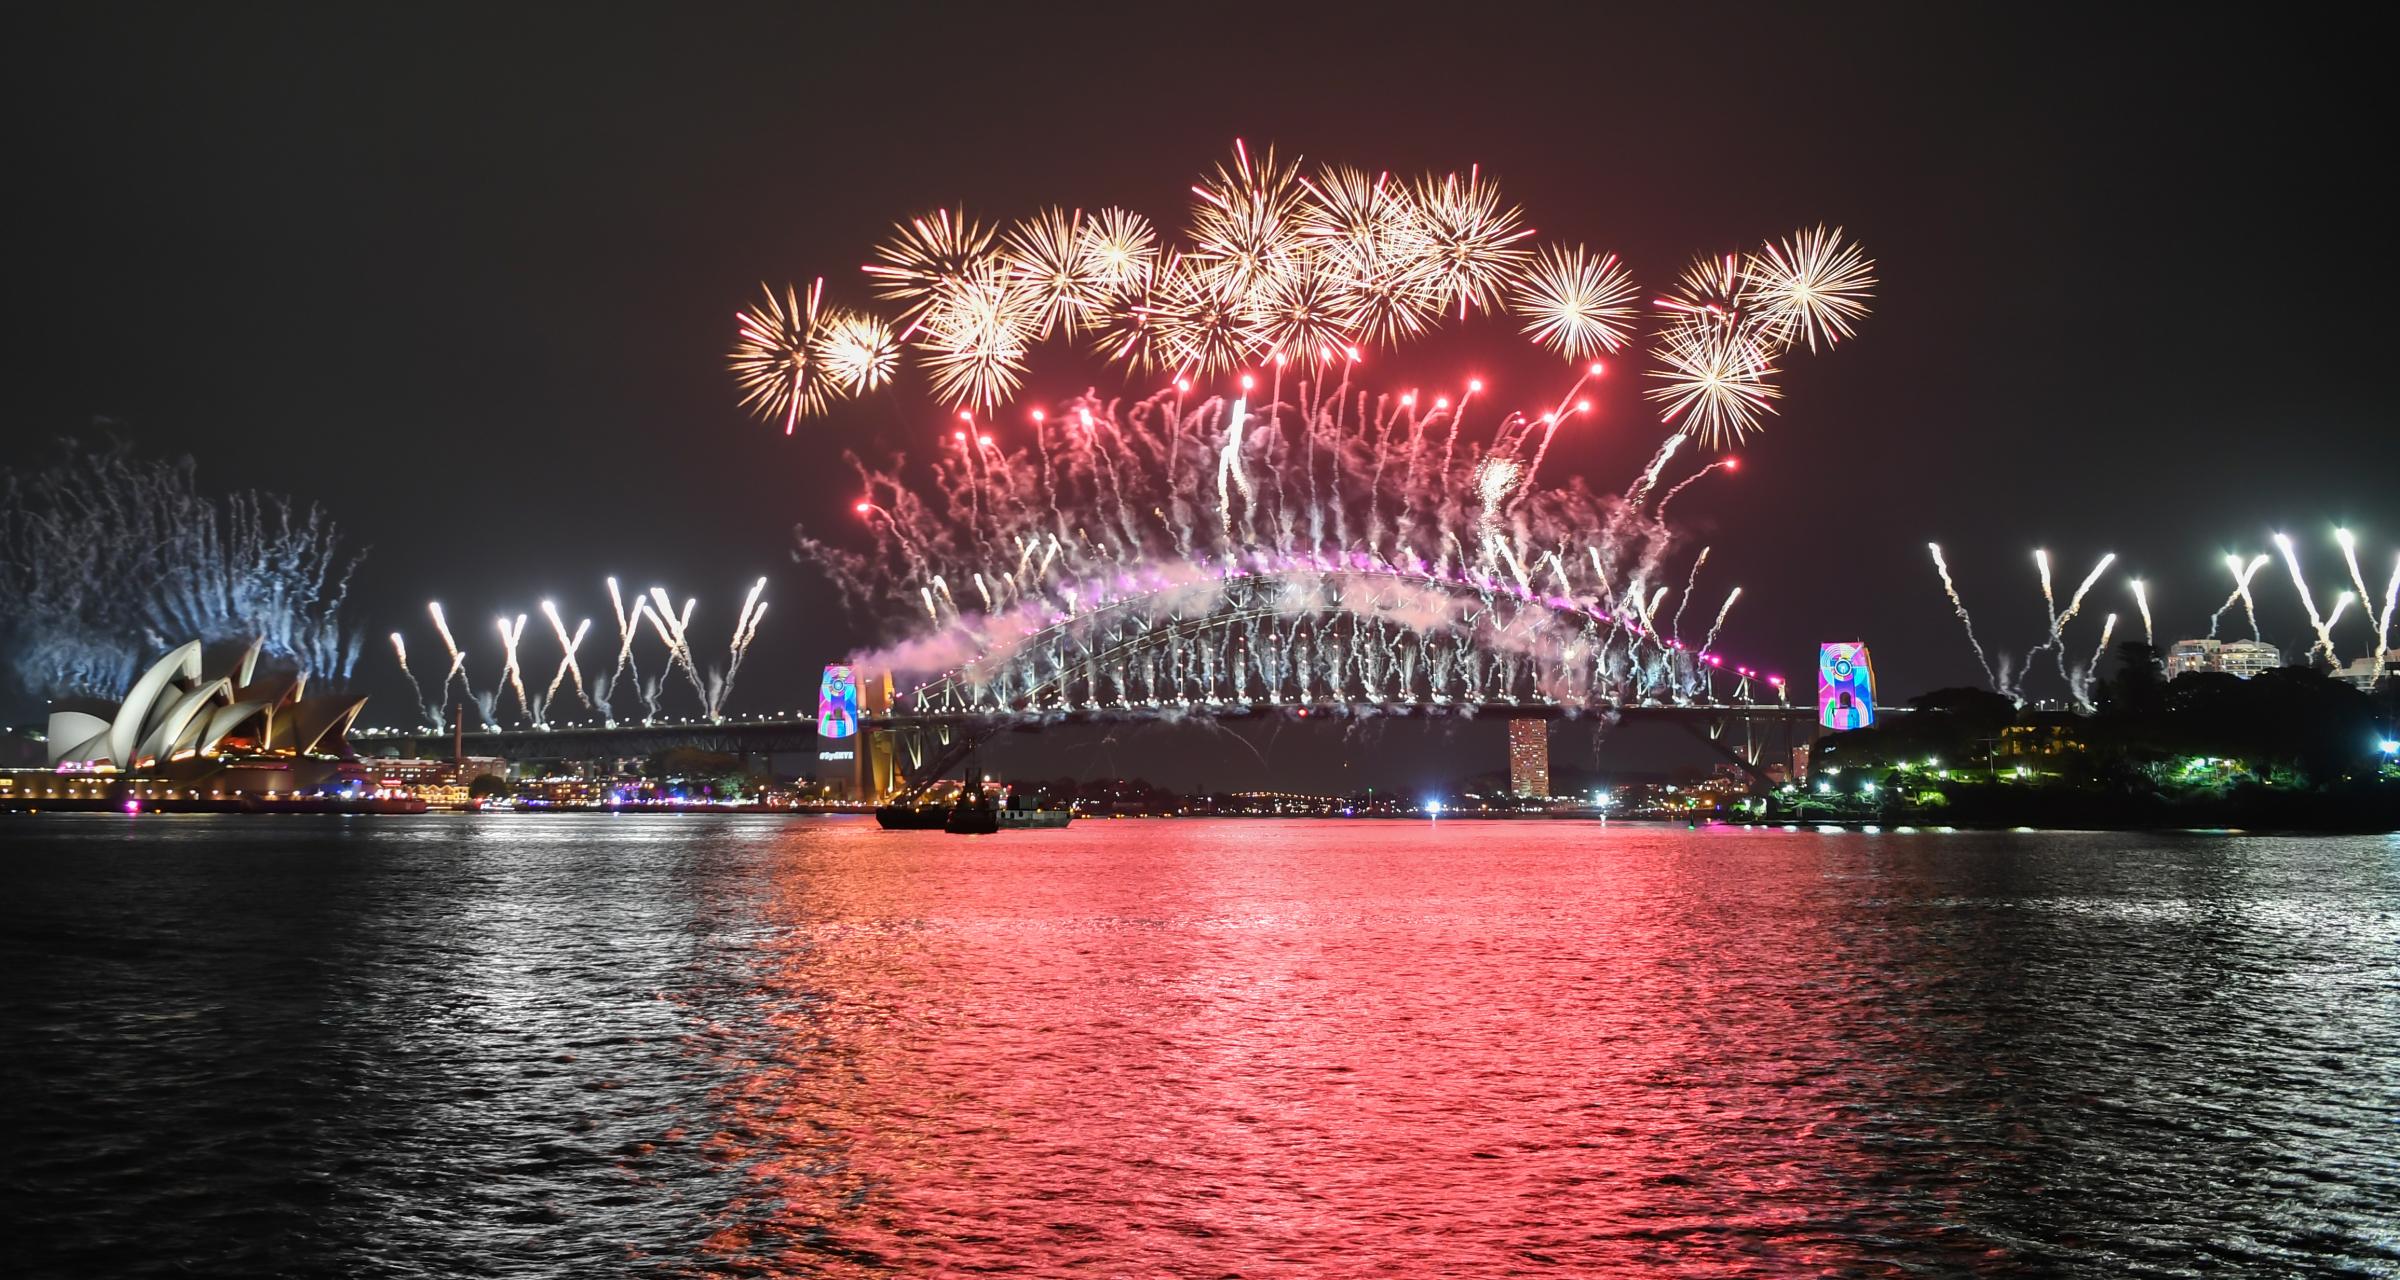 Sydney Celebrates New Year's Eve 2018